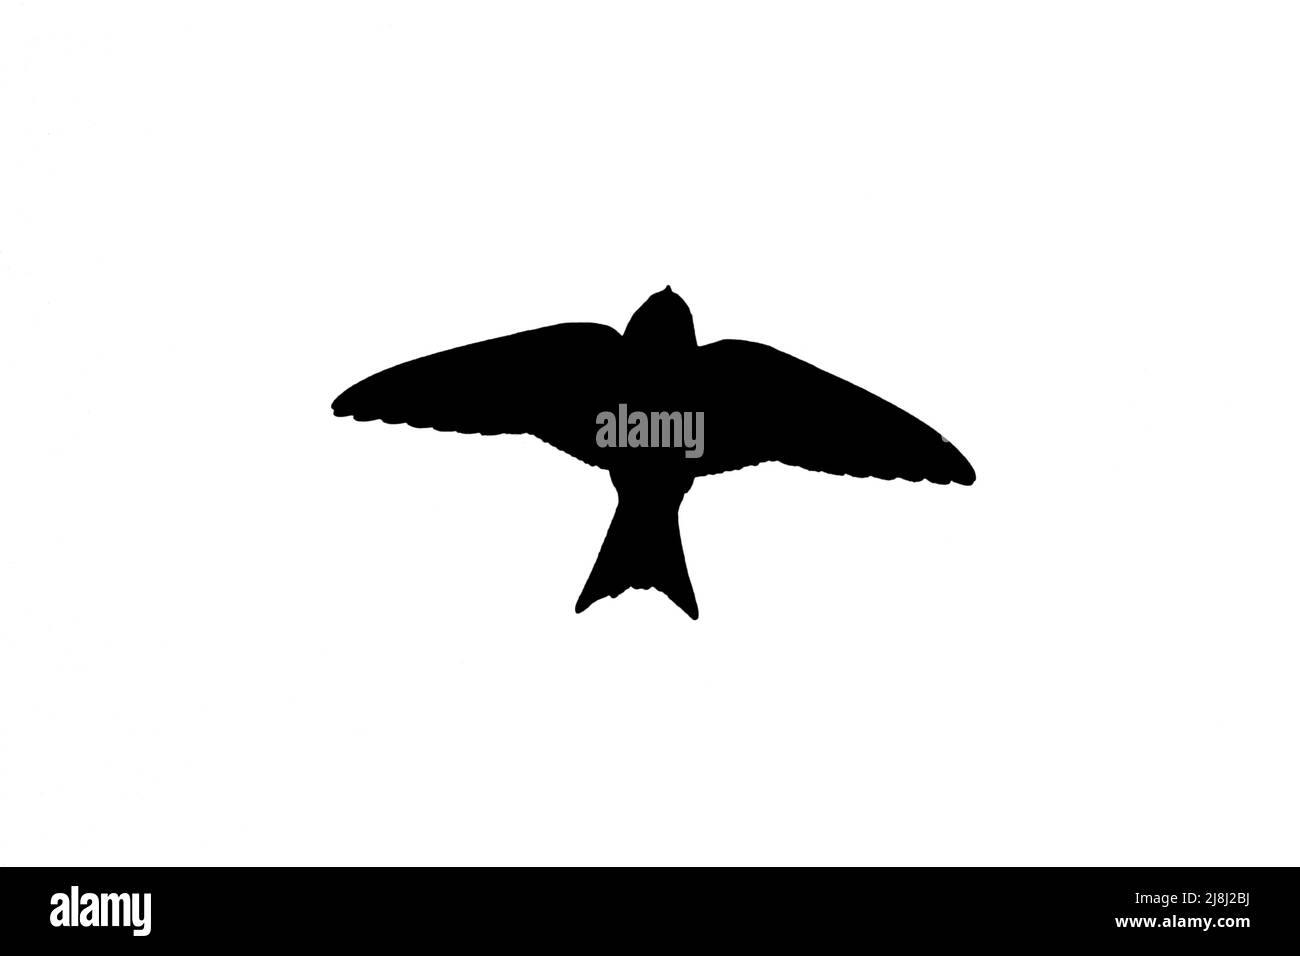 Silueta de casa común martin (Delichon urbicum) en vuelo contorneado sobre fondo blanco para mostrar alas, cabeza y cola formas Foto de stock